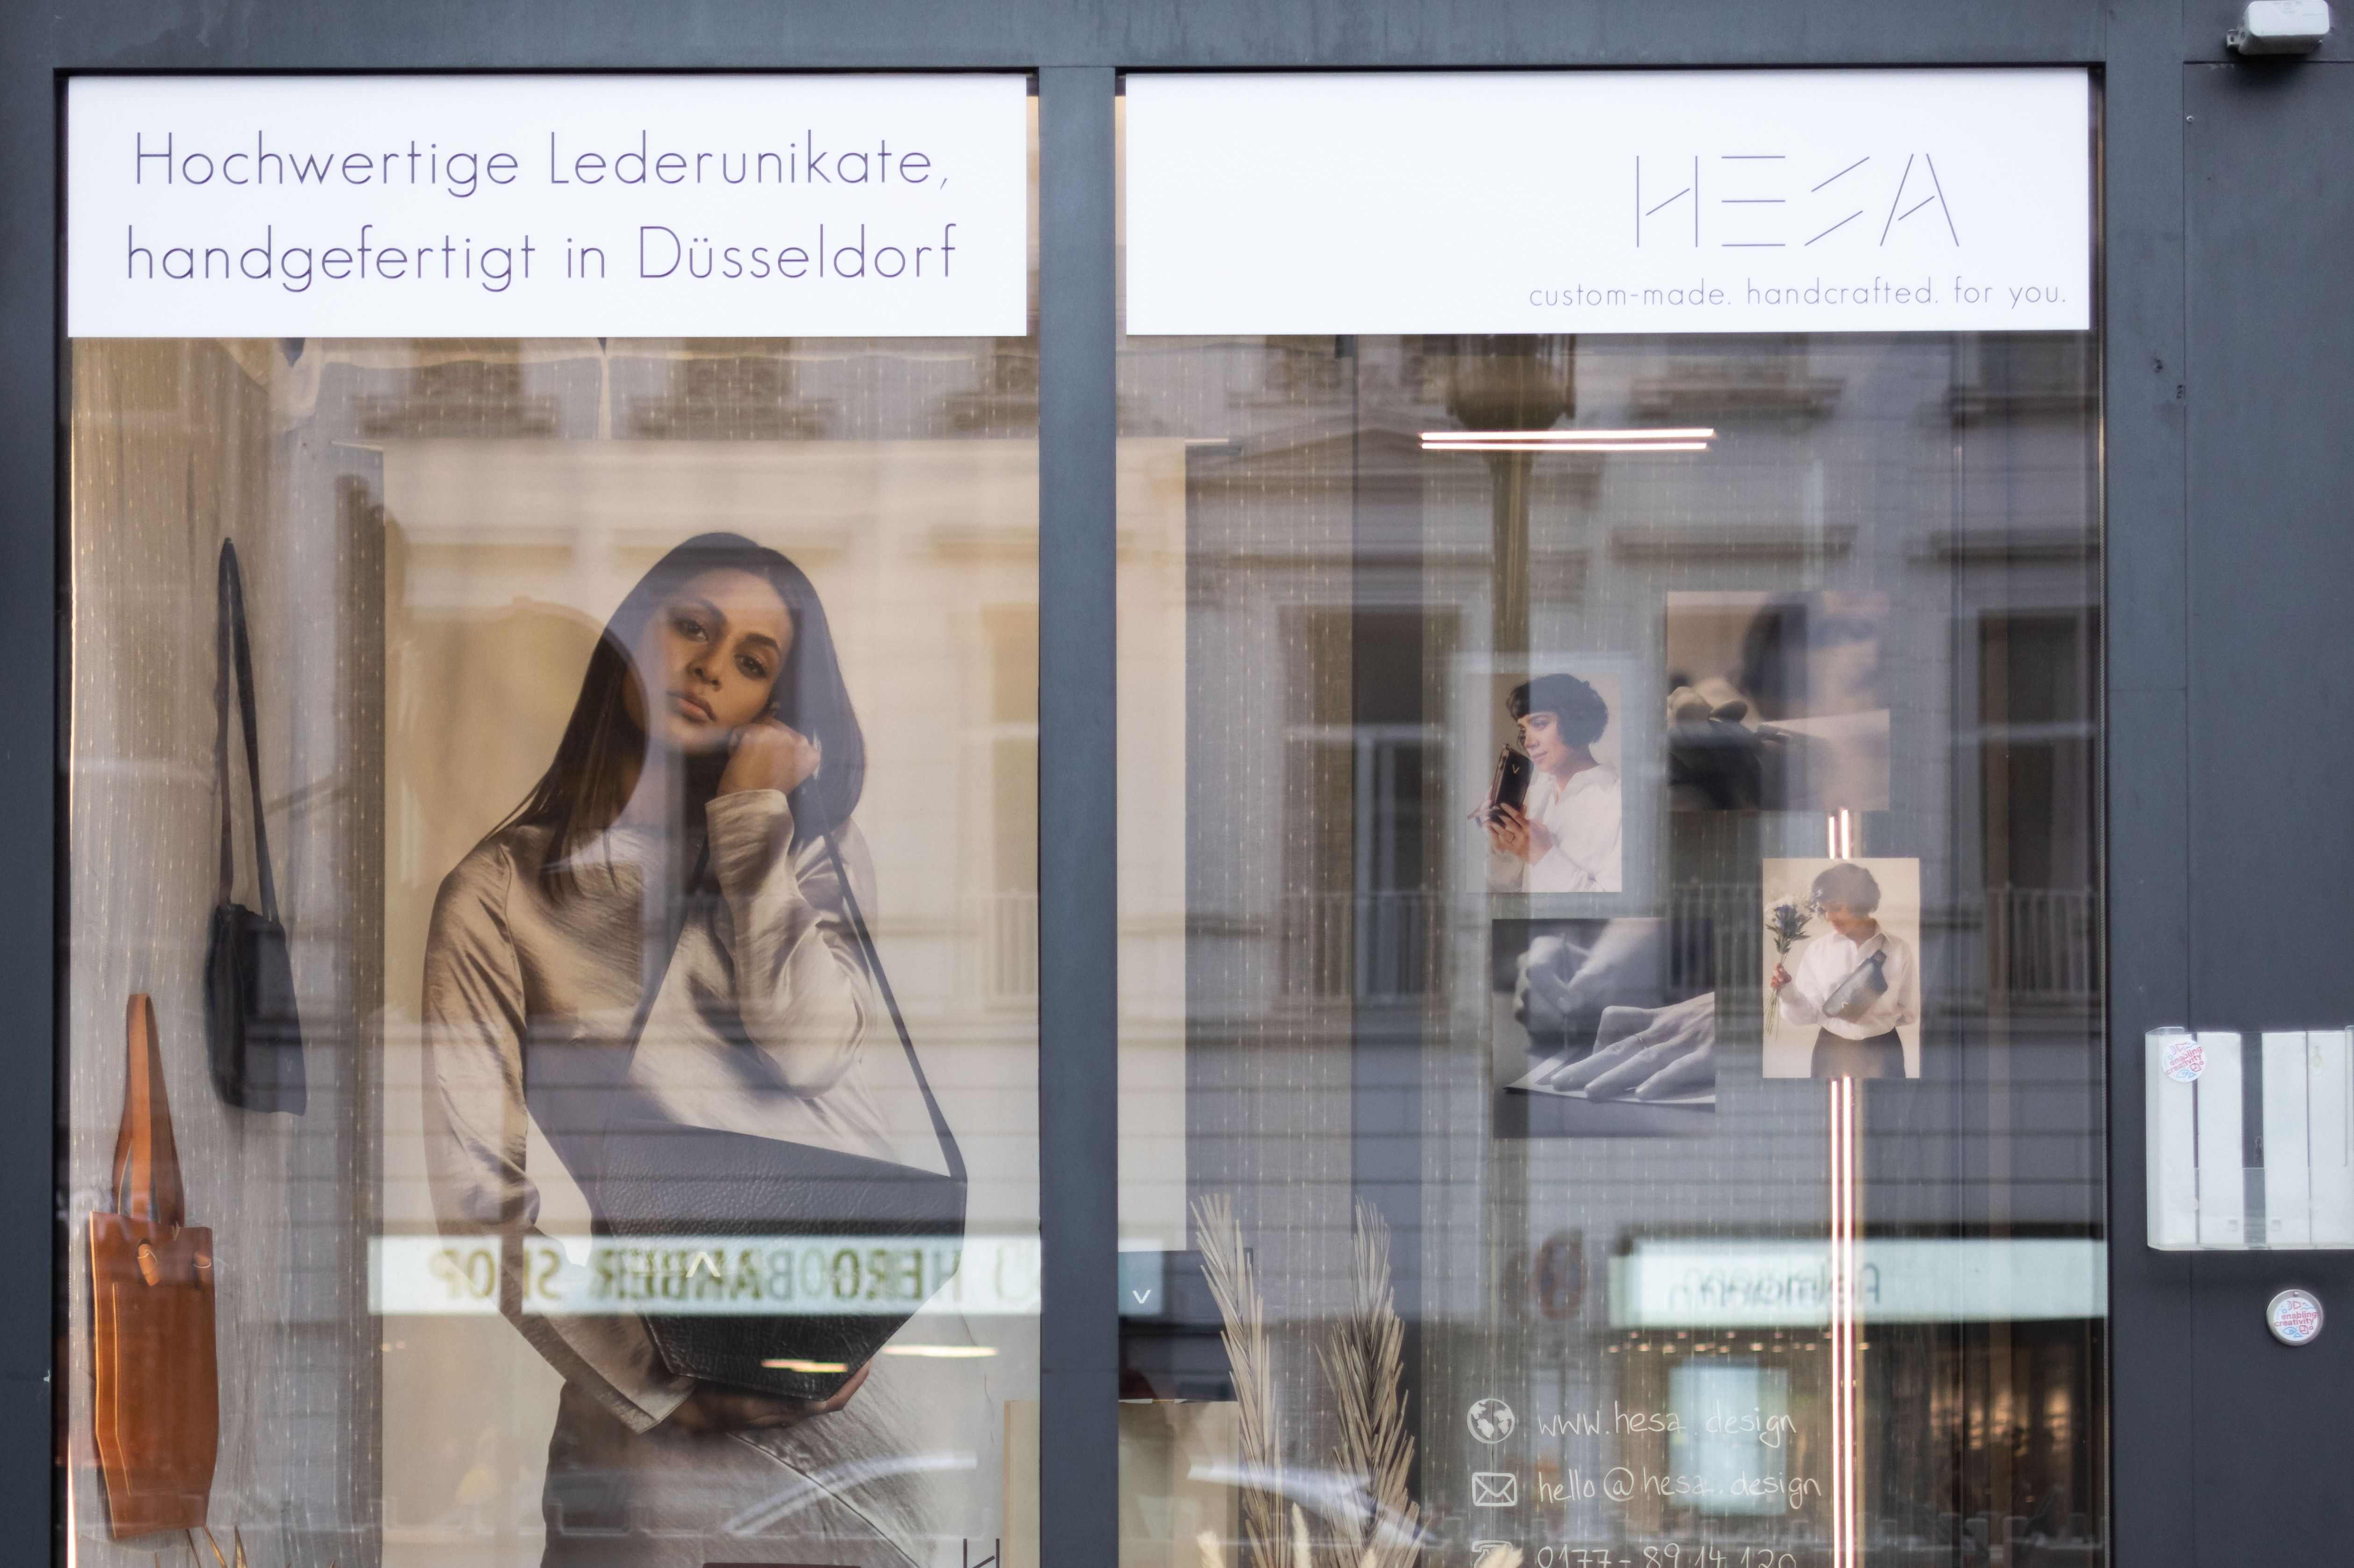 Mit den KomKuK-Fenstern wird Sichtbarkeit für die lokal produzierende Kultur- und Kreativwirtschaft geschaffen © Landeshauptstadt Düsseldorf/Lars Heidrich 